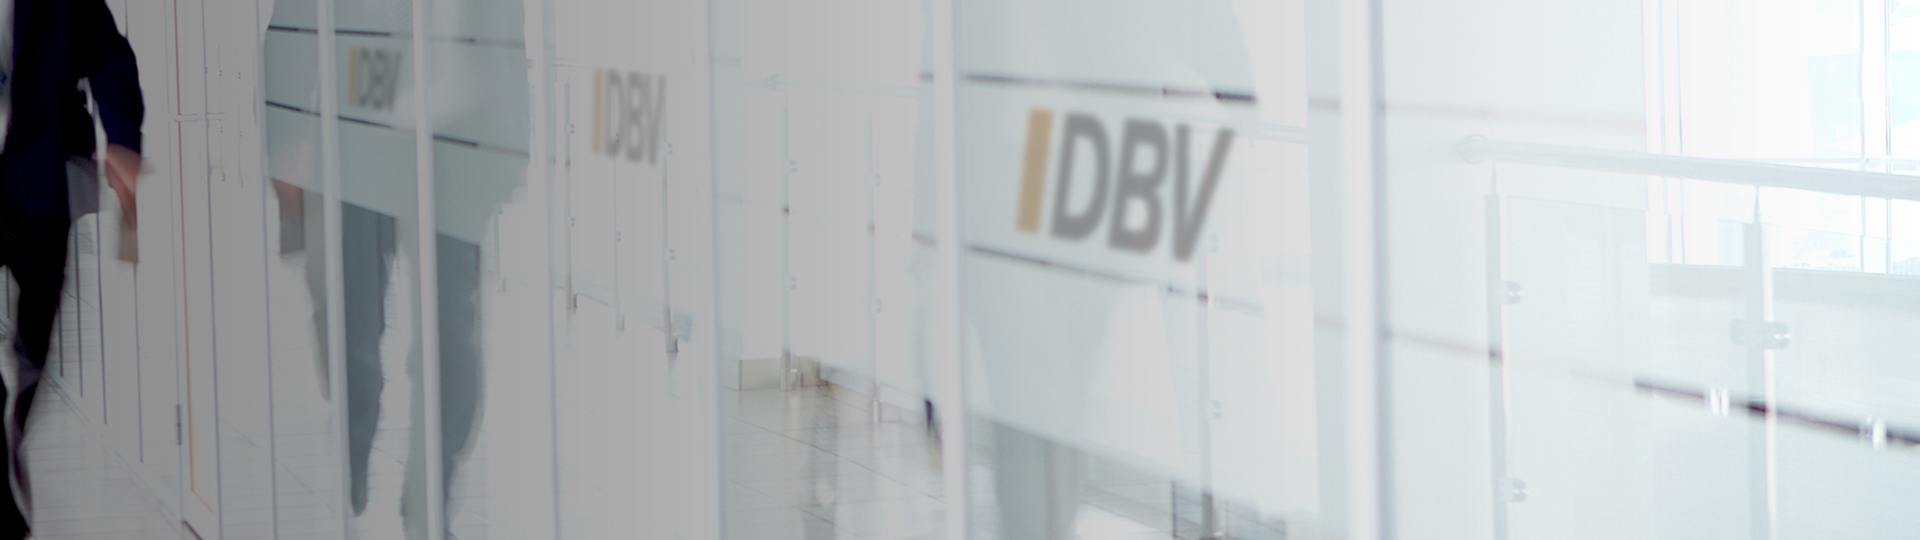 Dienstunfähigkeitsversicherung  | DBV Siegen Daniel Martin